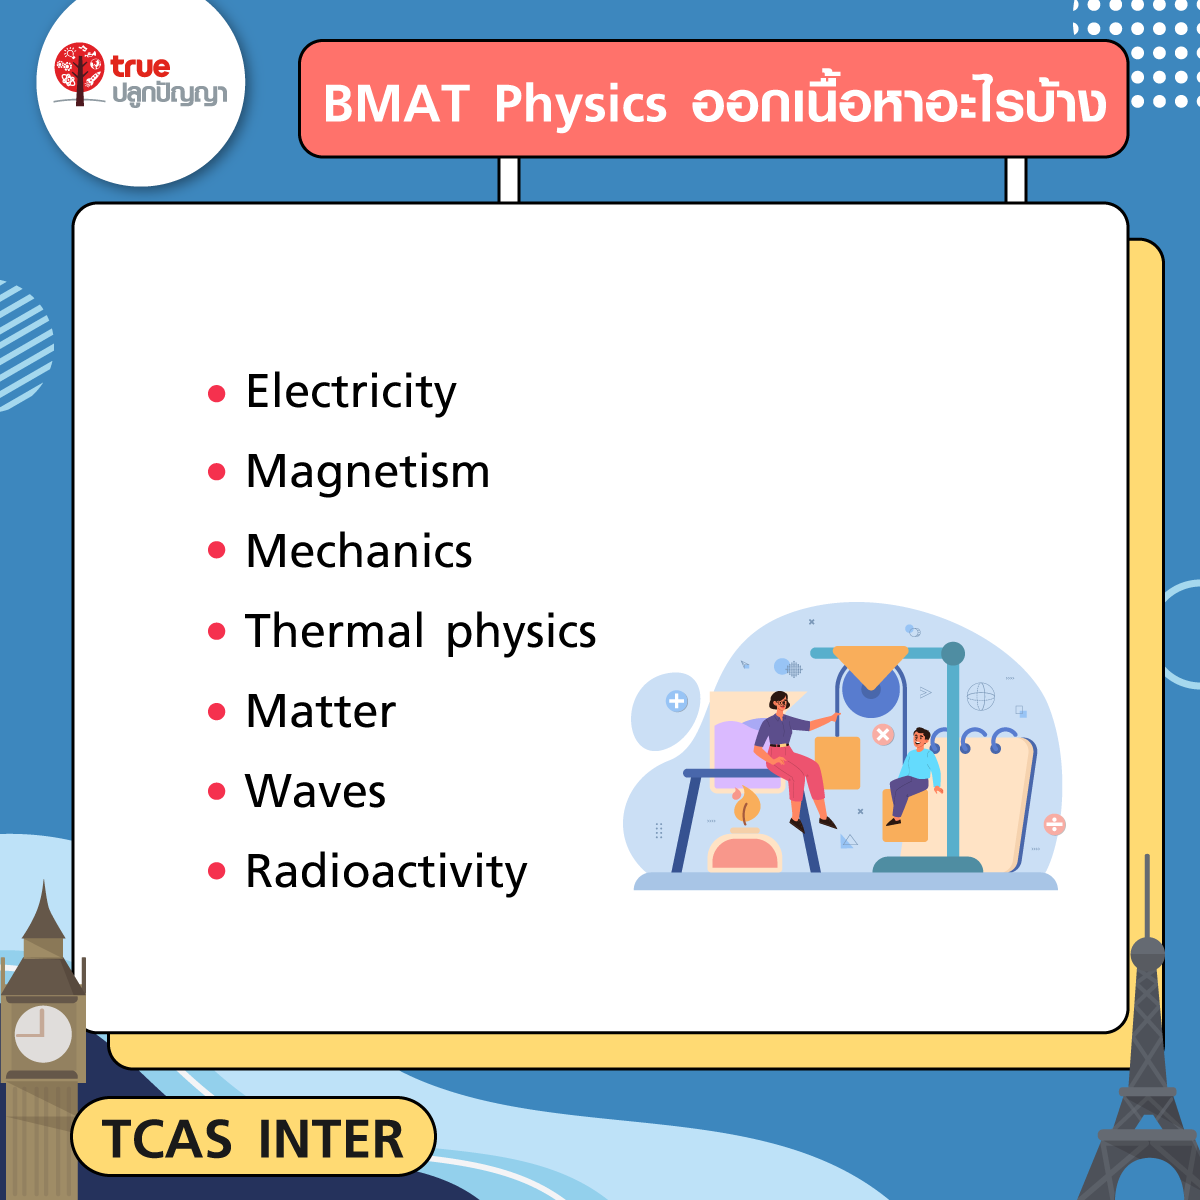 BMAT Physics ออกเนื้อหาอะไรบ้าง